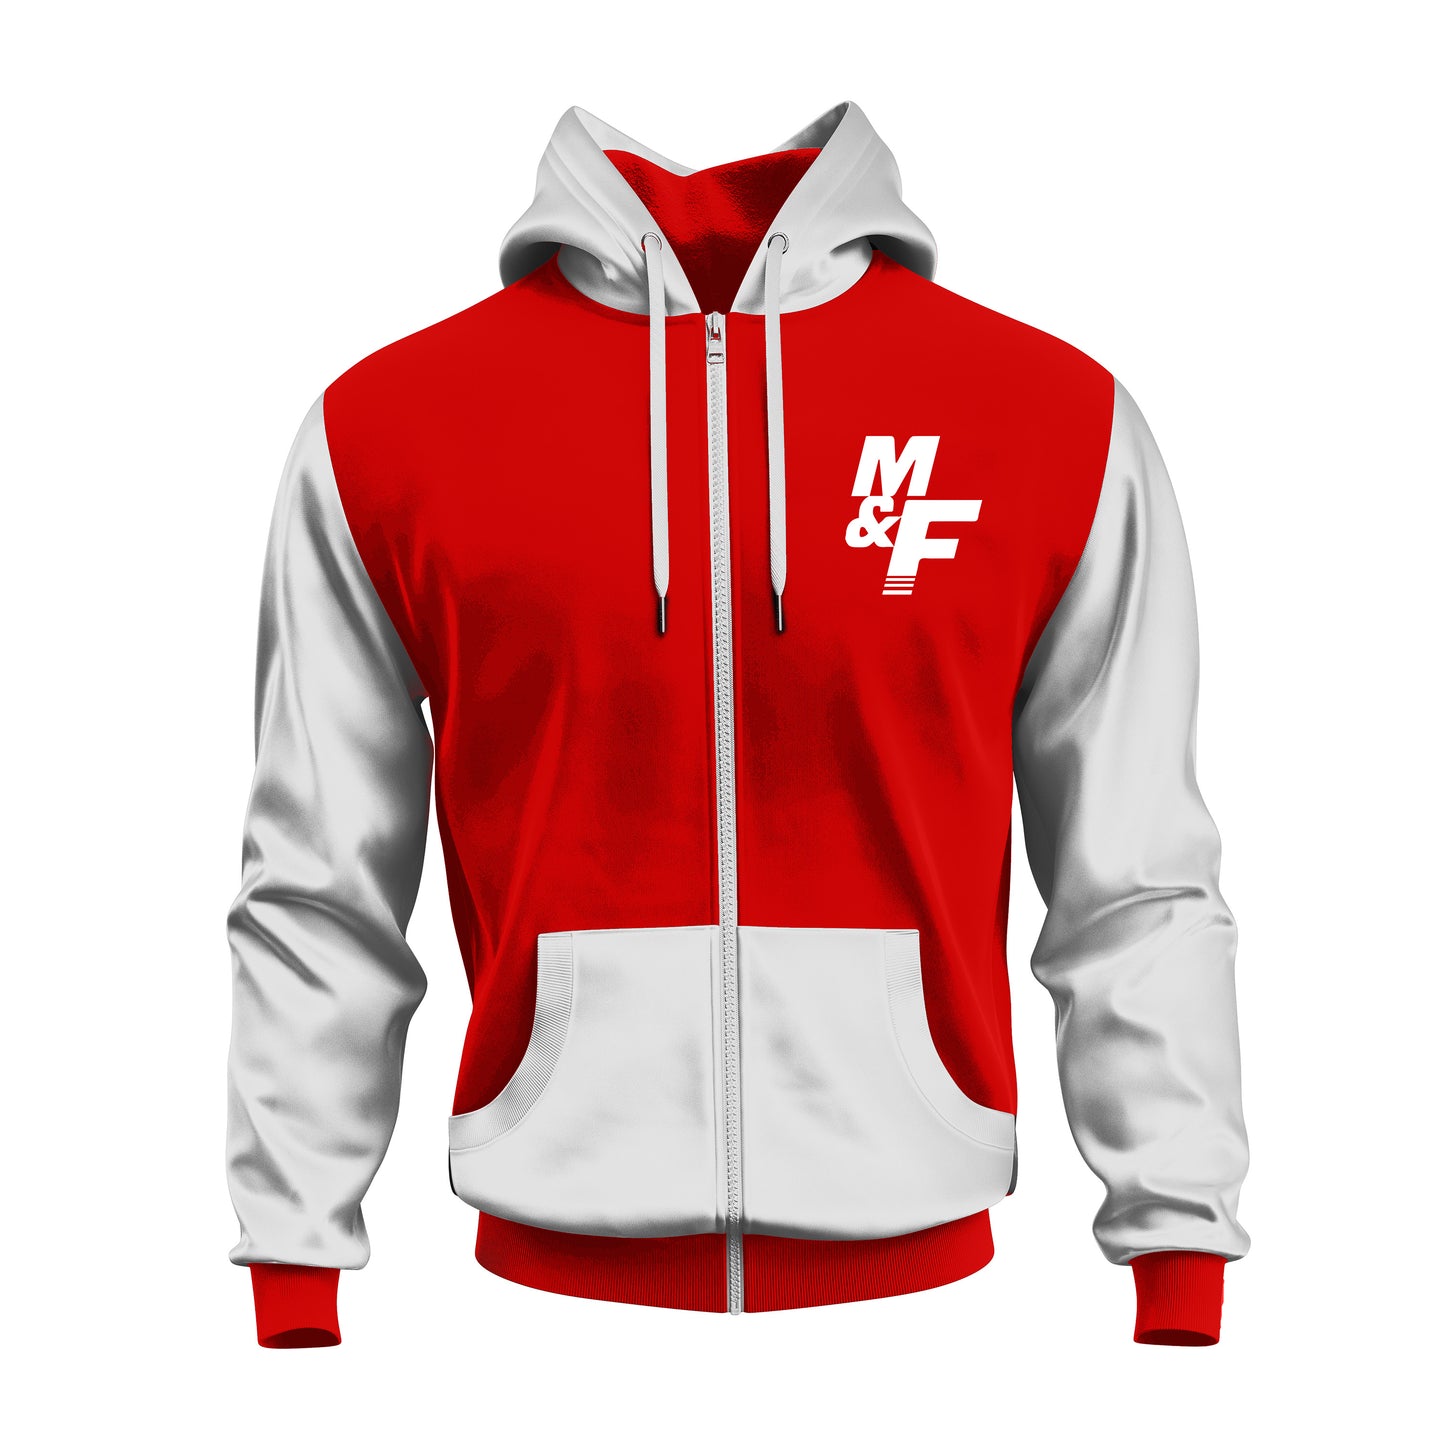 M & F Red/White Full Zip Hoodie Jacket